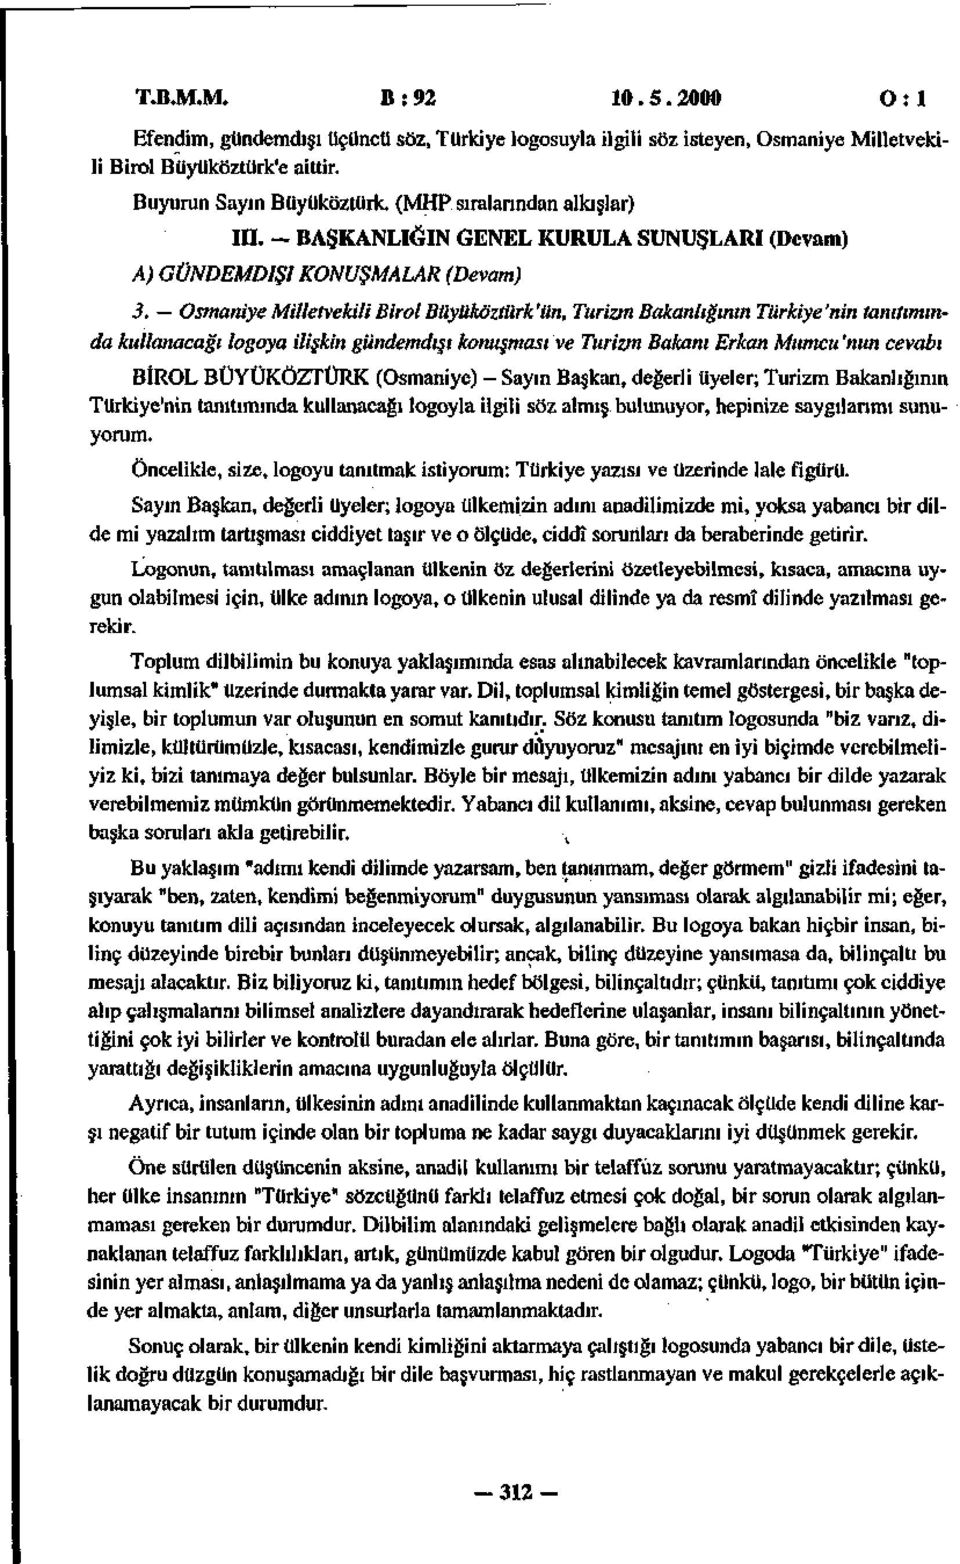 Osmaniye Milletvekili Birol Büyüköztürk'ün, Turizm Bakanlığının Türkiye'nin tanıtımında kullanacağı logoya ilişkin gündemdışı konuşması ve Turizm Bakanı Erkan Mumcu 'nun cevabı BİROL BÜYÜKÖZTÜRK